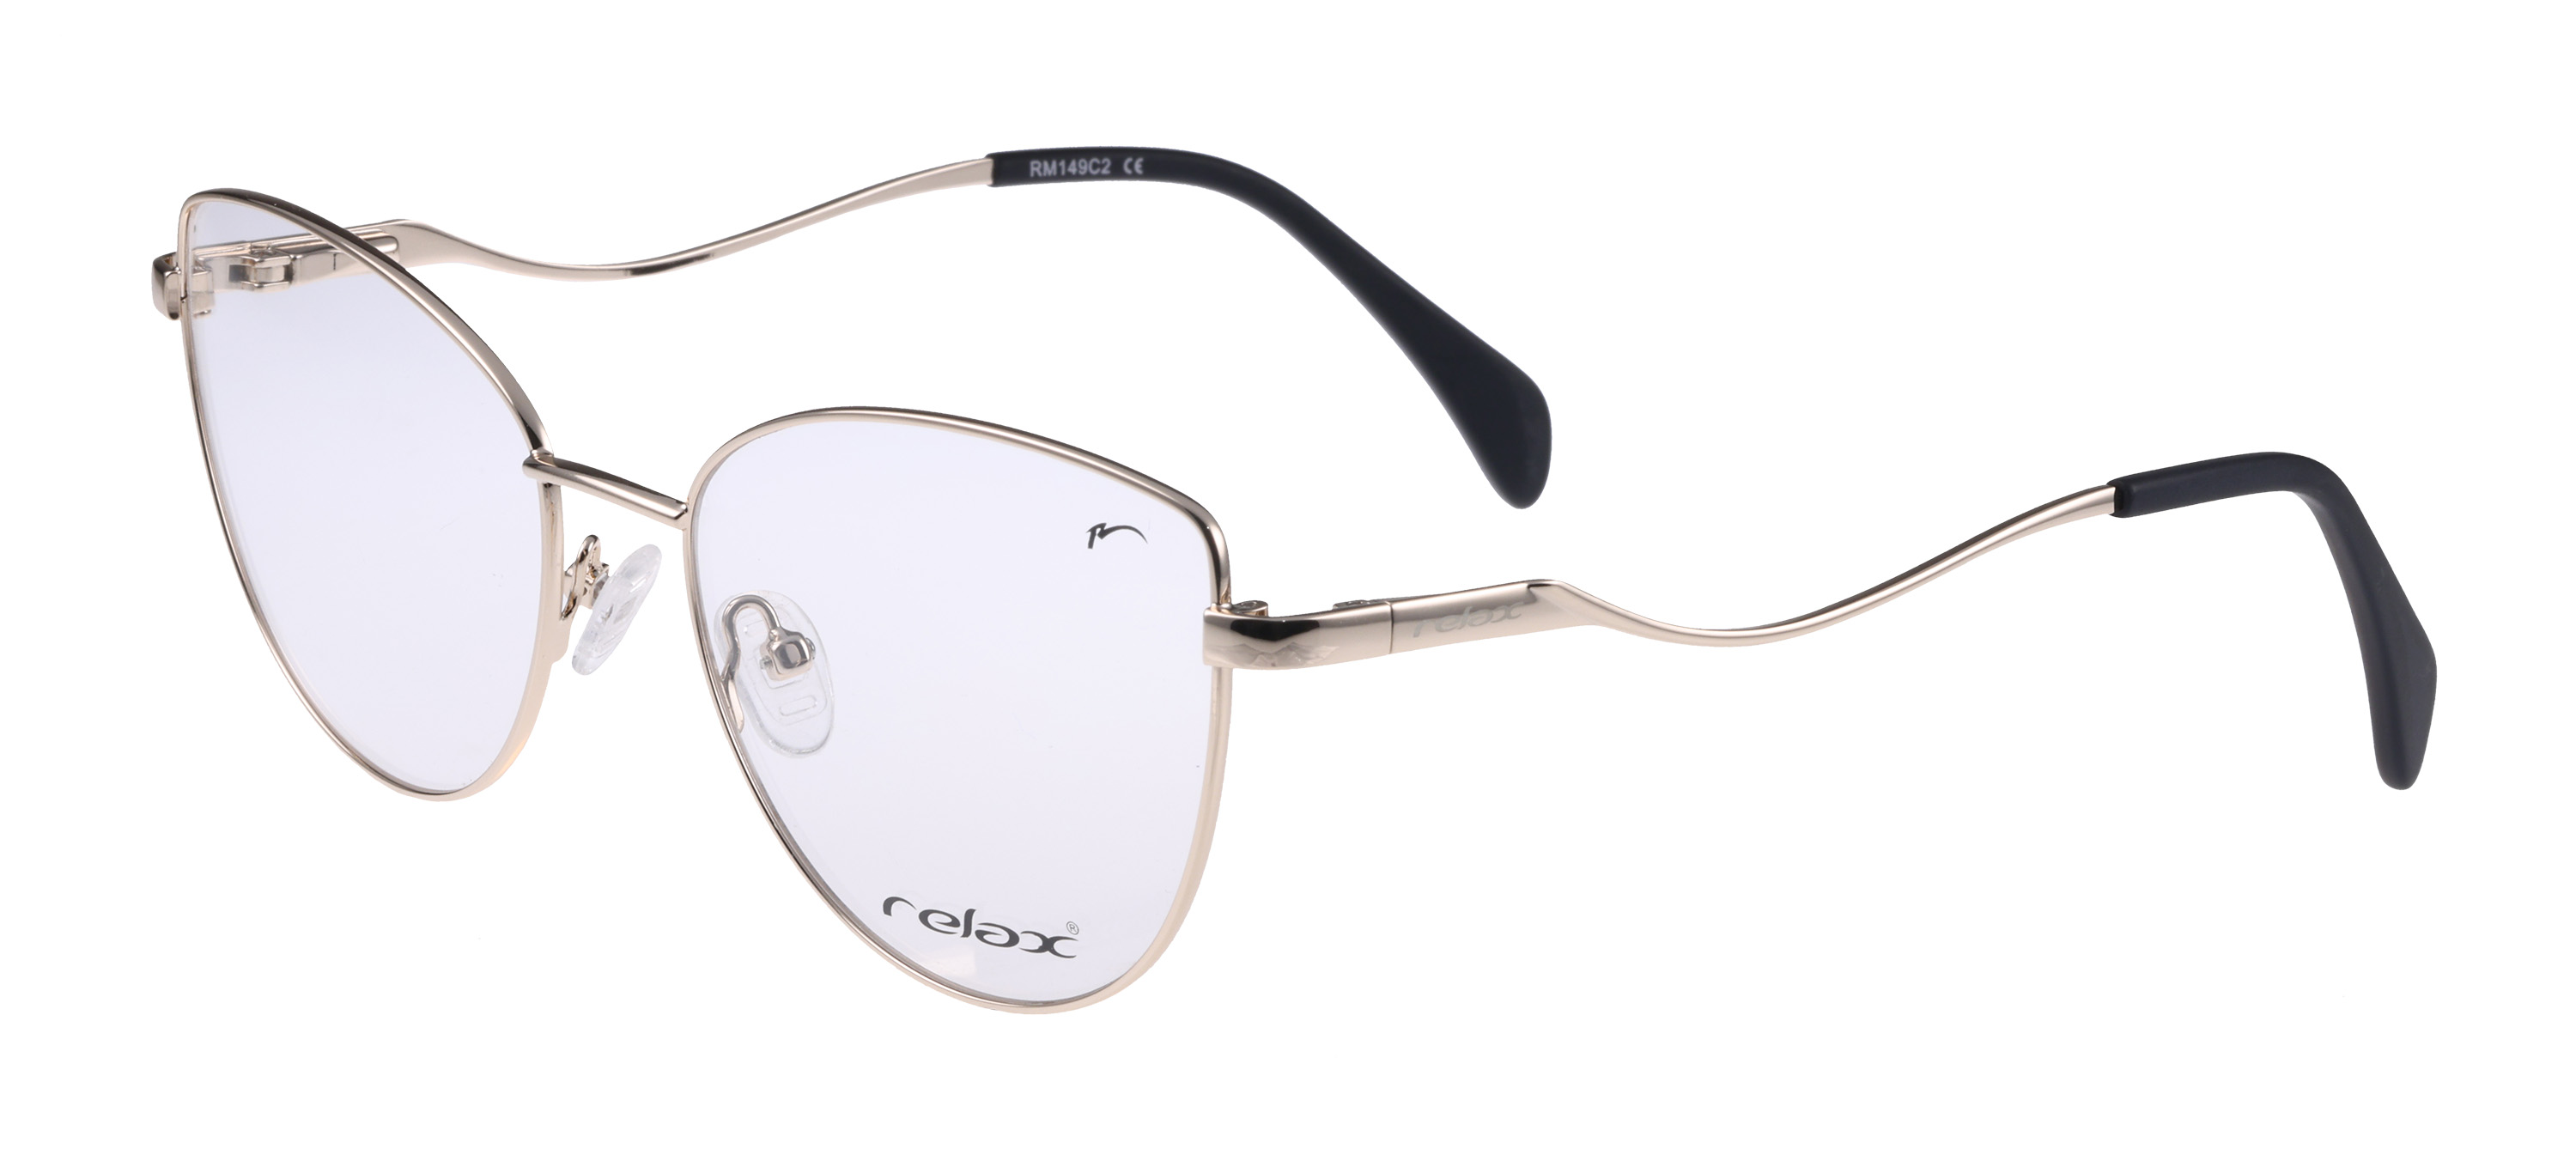 Dioptrické brýle Relax Clara RM149C2 -